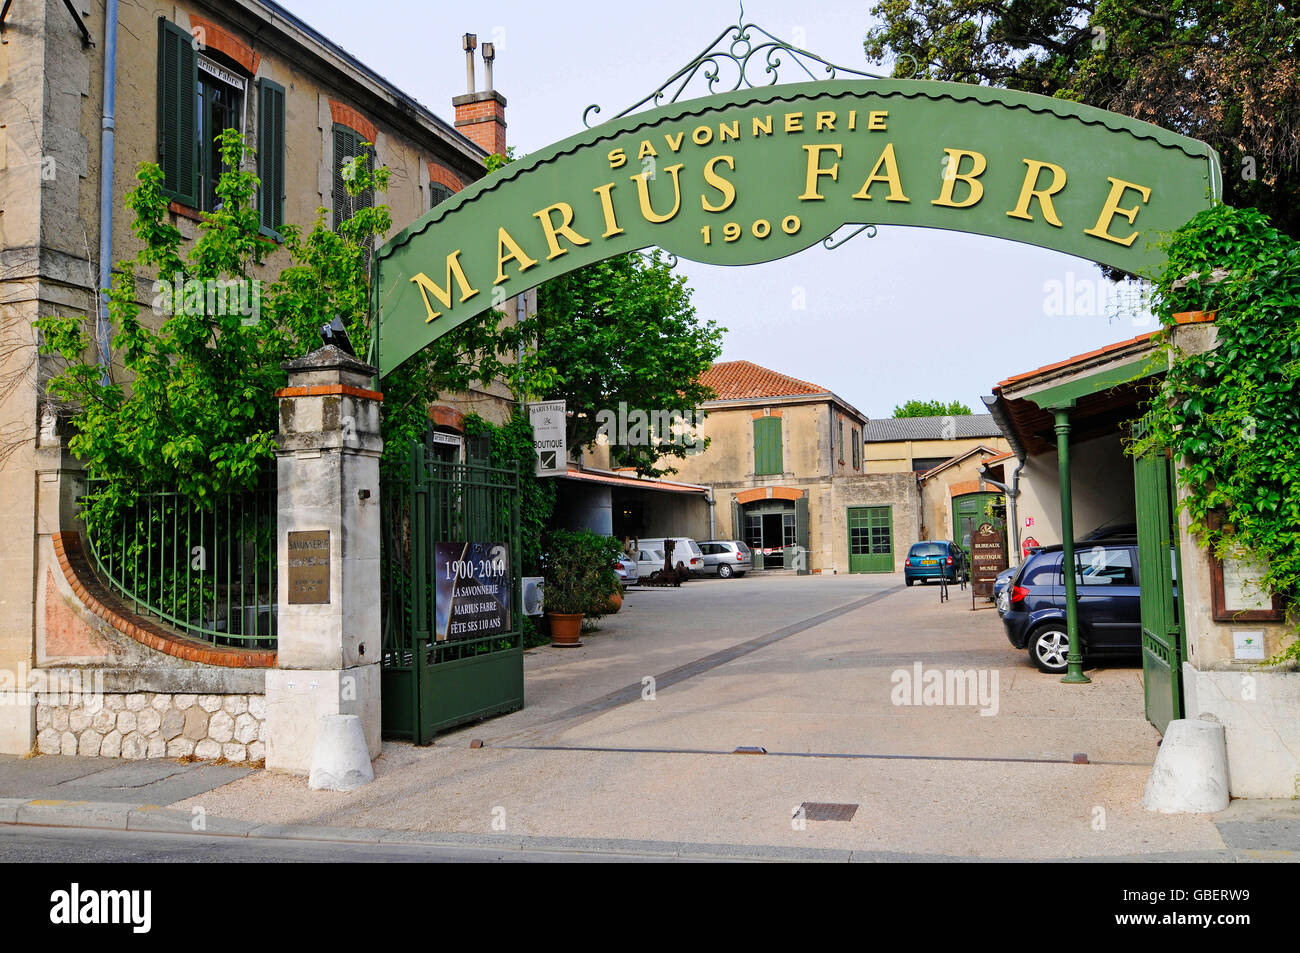 Savonnerie Marius Fabre, Salon-de-Provence, Provence, Cote d'Azur, dans le  sud de la France, France / producteur de savon Photo Stock - Alamy